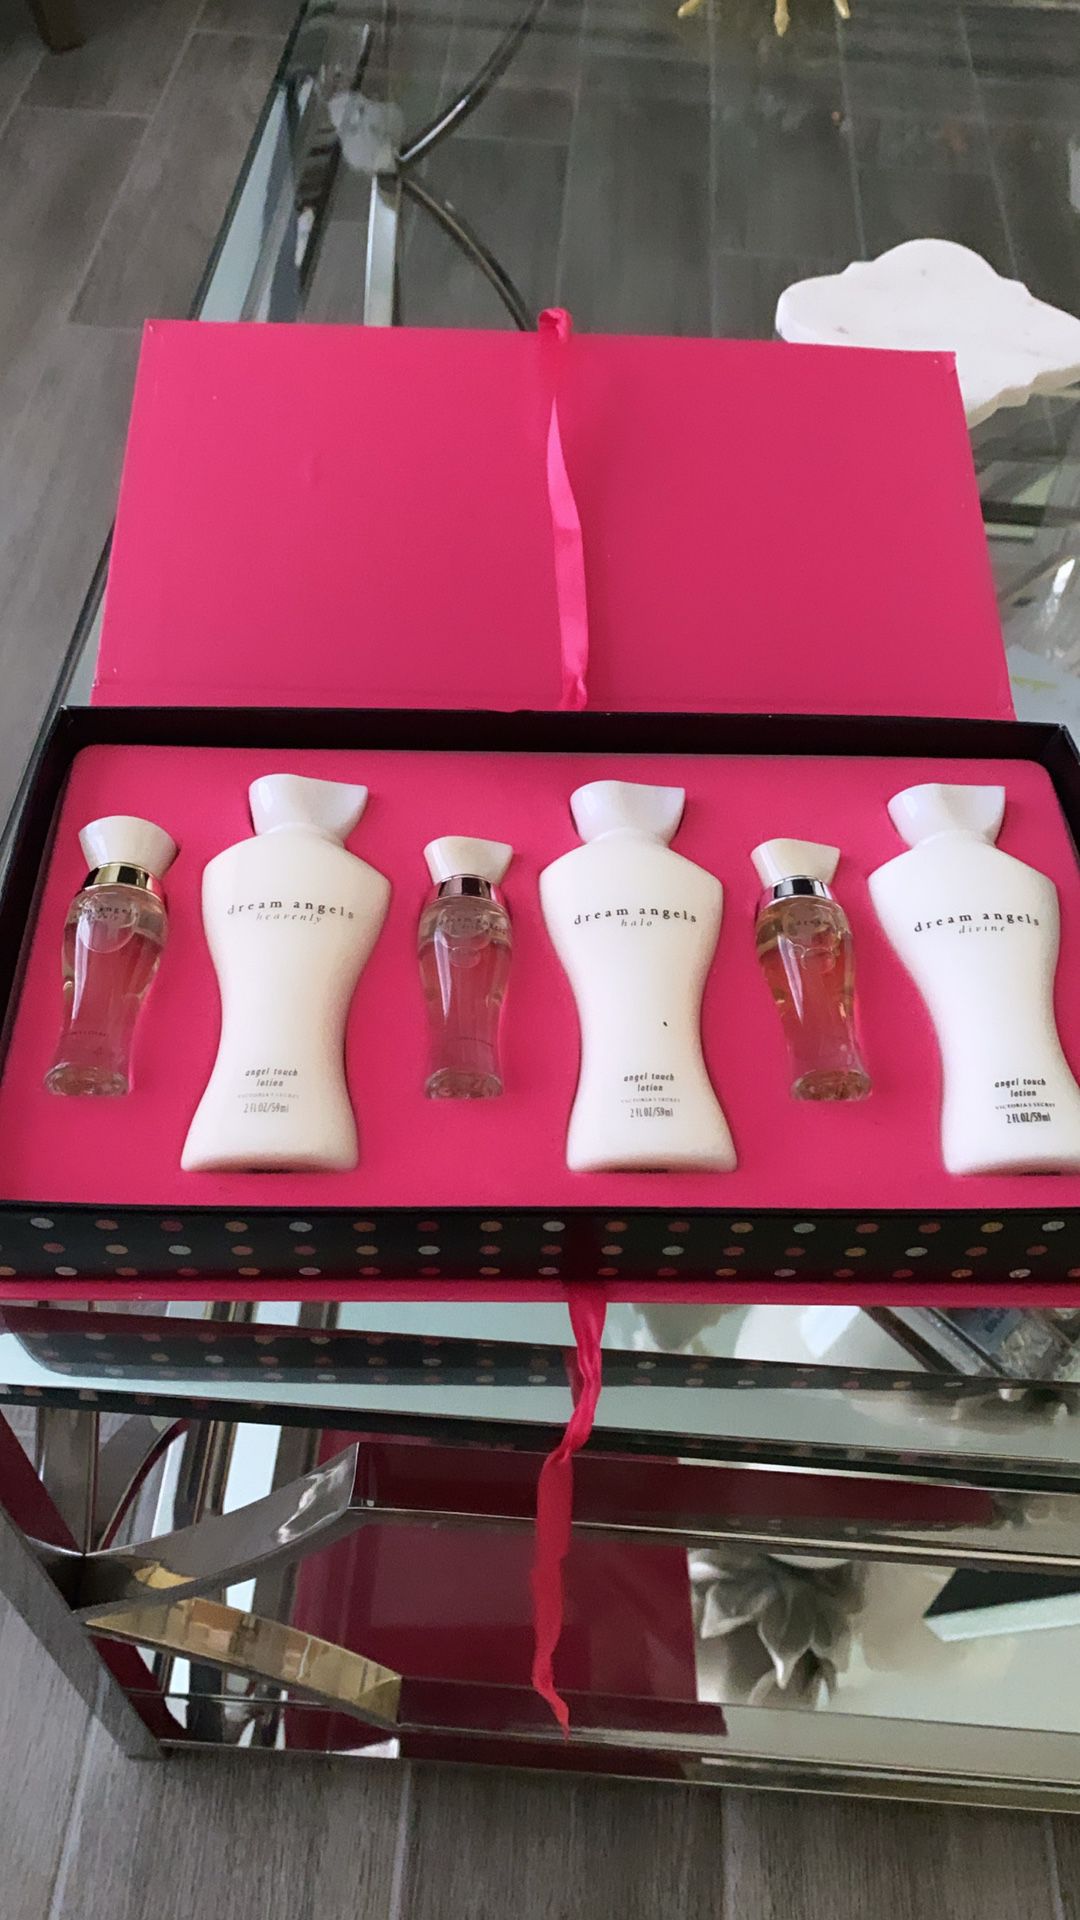 Victoria’s Secret fragrance gift set